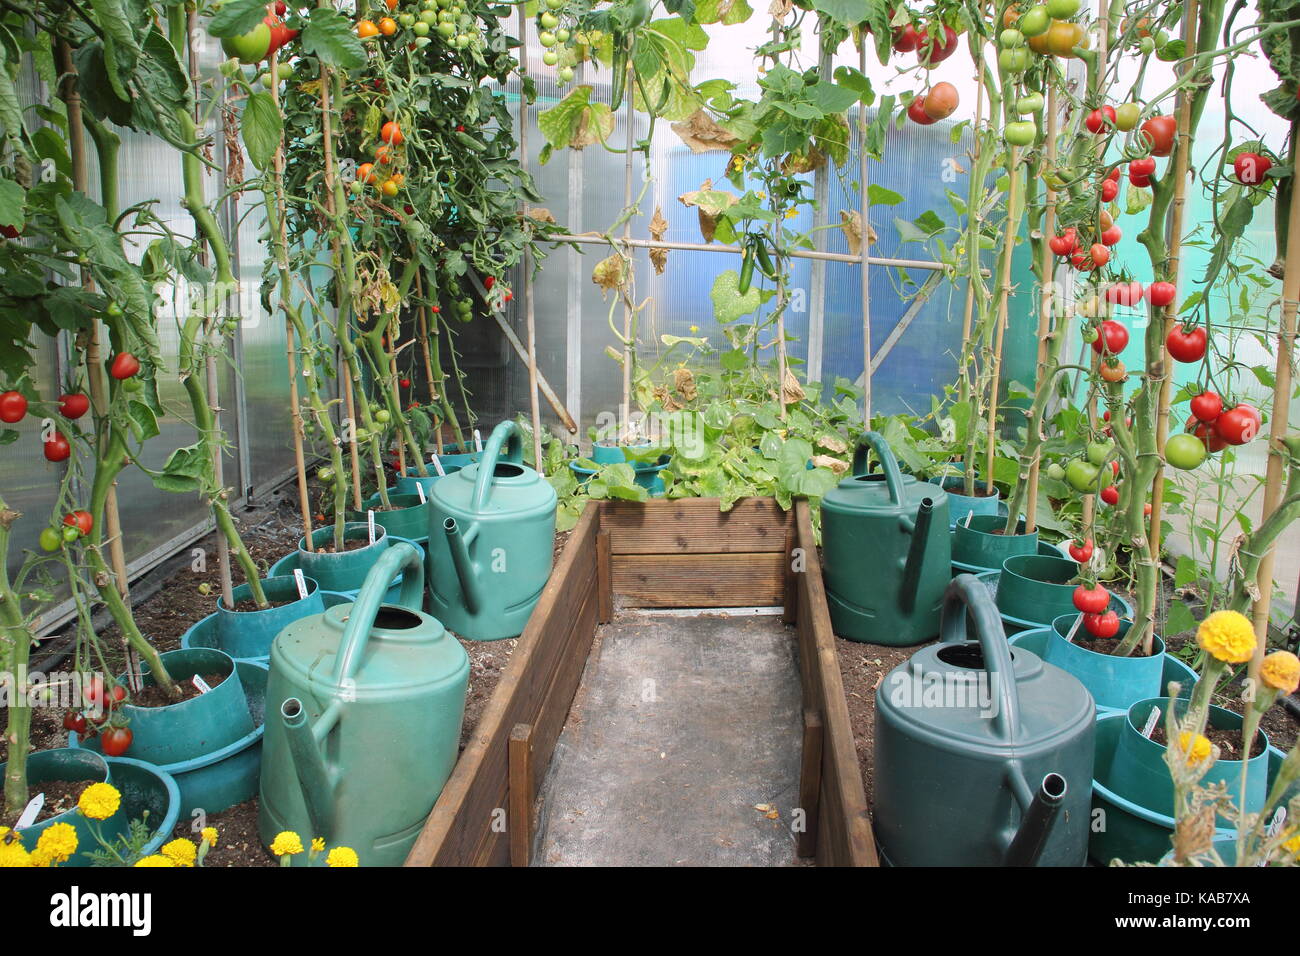 Las plantas de tomate, despojadas de sus hojas inferiores para alentar una mejor cosecha, creciendo en bordes elevados en un invernadero en un jardín de adjudicación en inglés Foto de stock